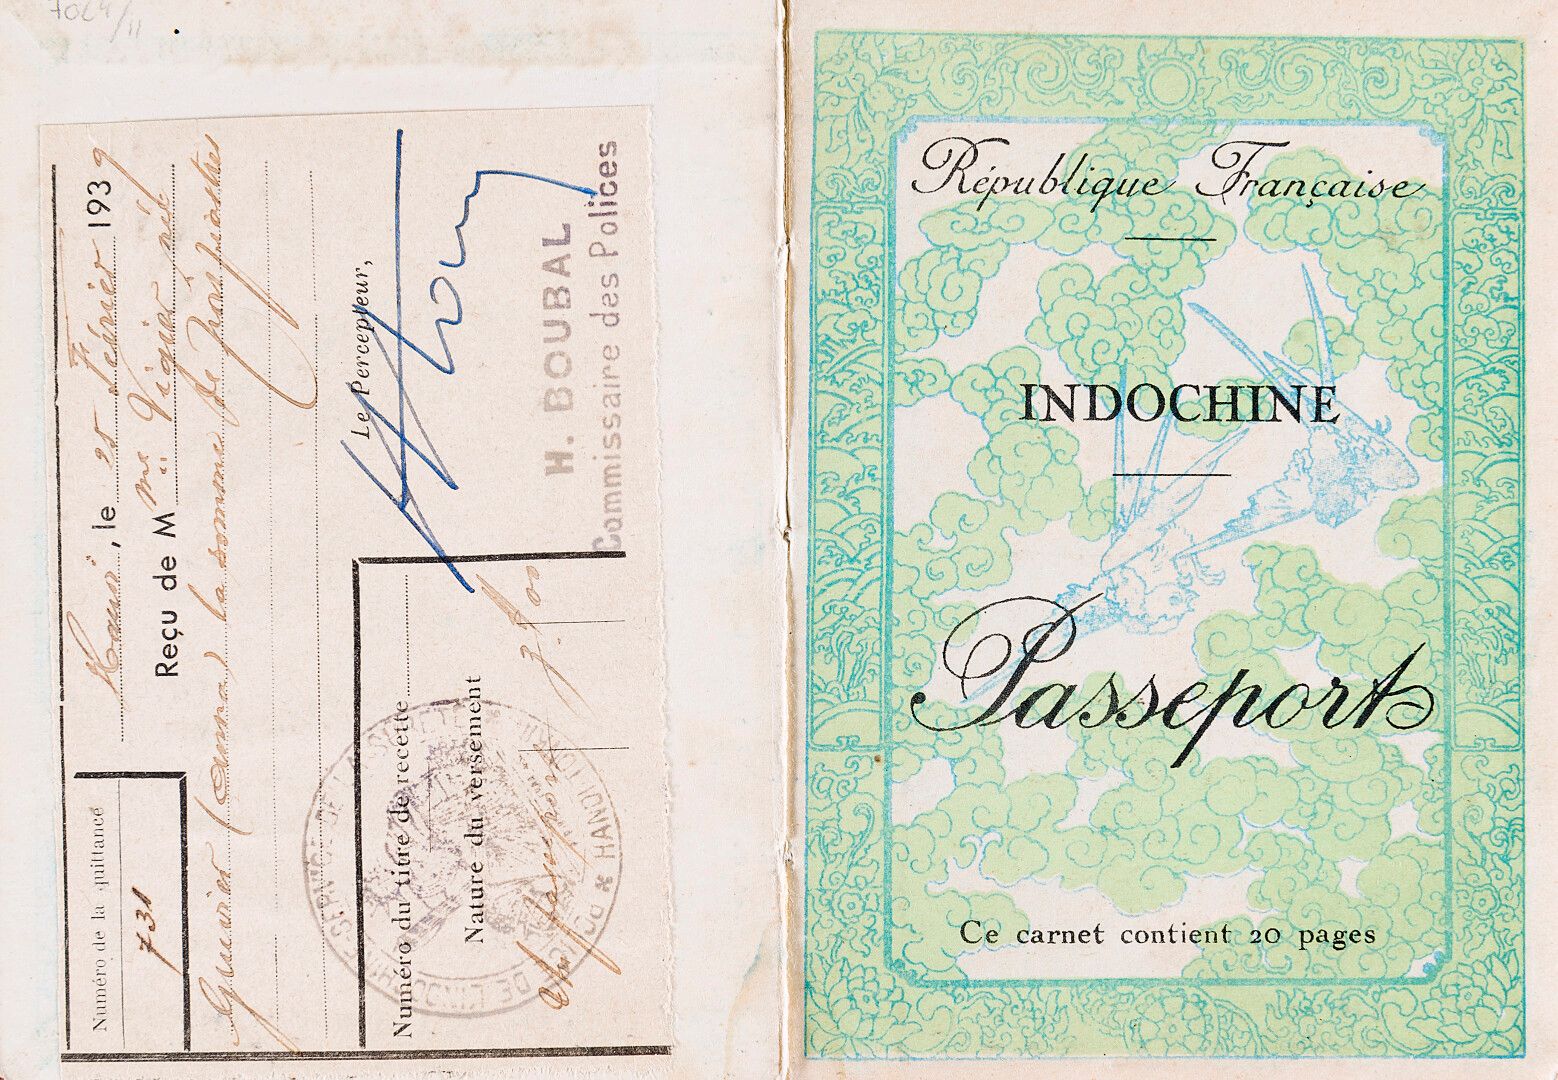 Null Allgemeine Regierung von Indochina.

INDOCHINA - Reisepass.

Kopie mit einj&hellip;